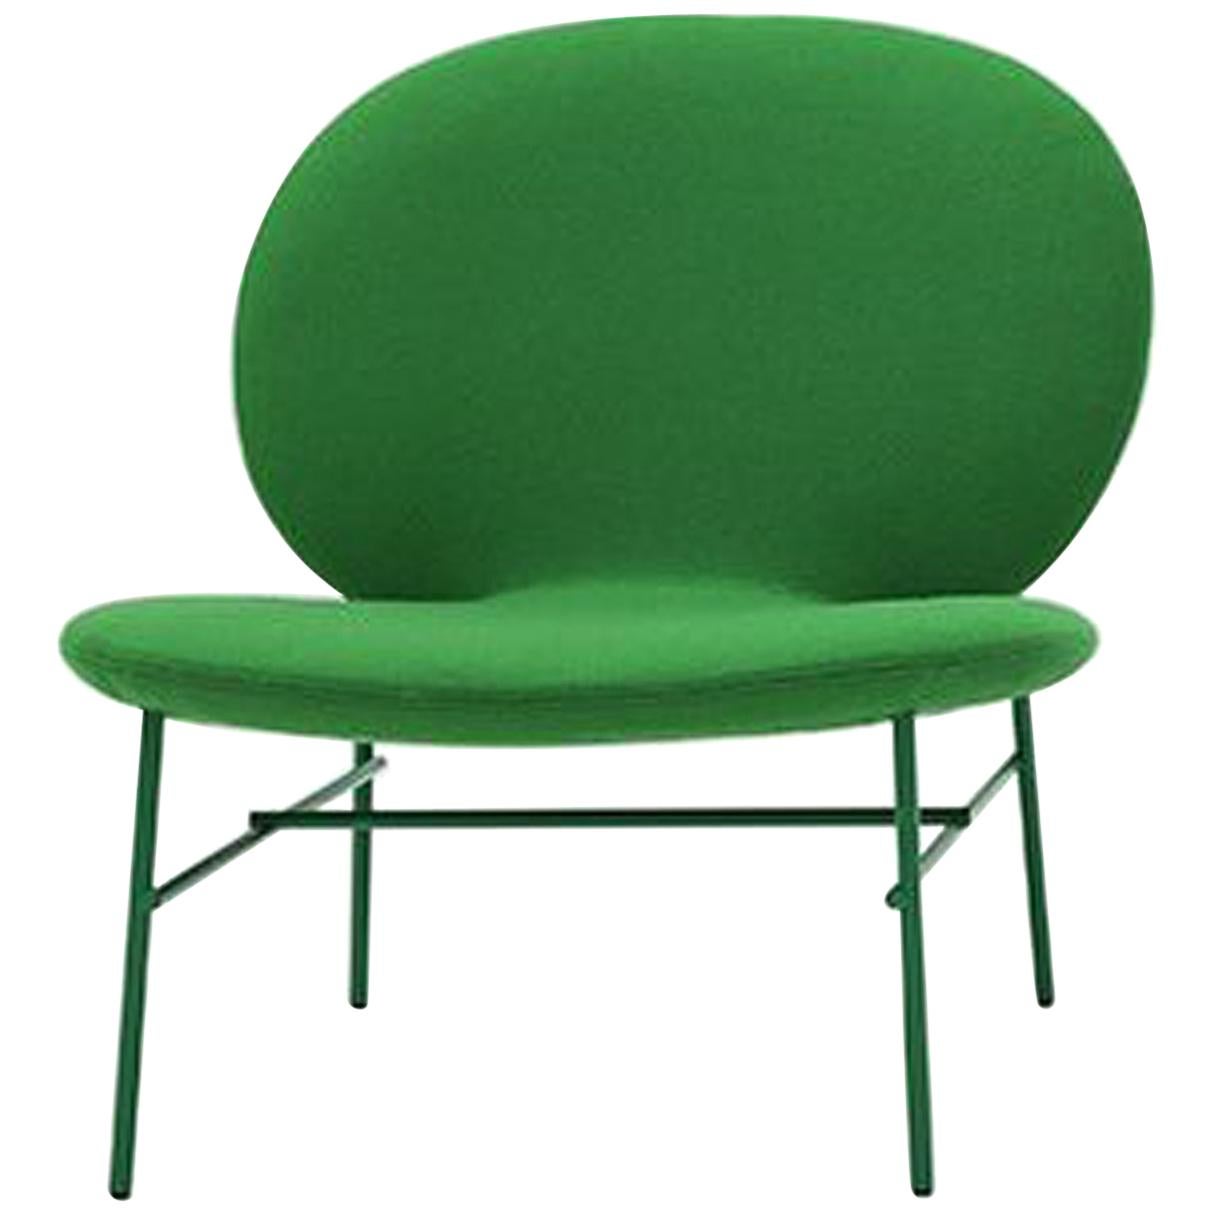 Contemporary Tacchini Kelly E Chair Designed by Claesson Koivisto Rune